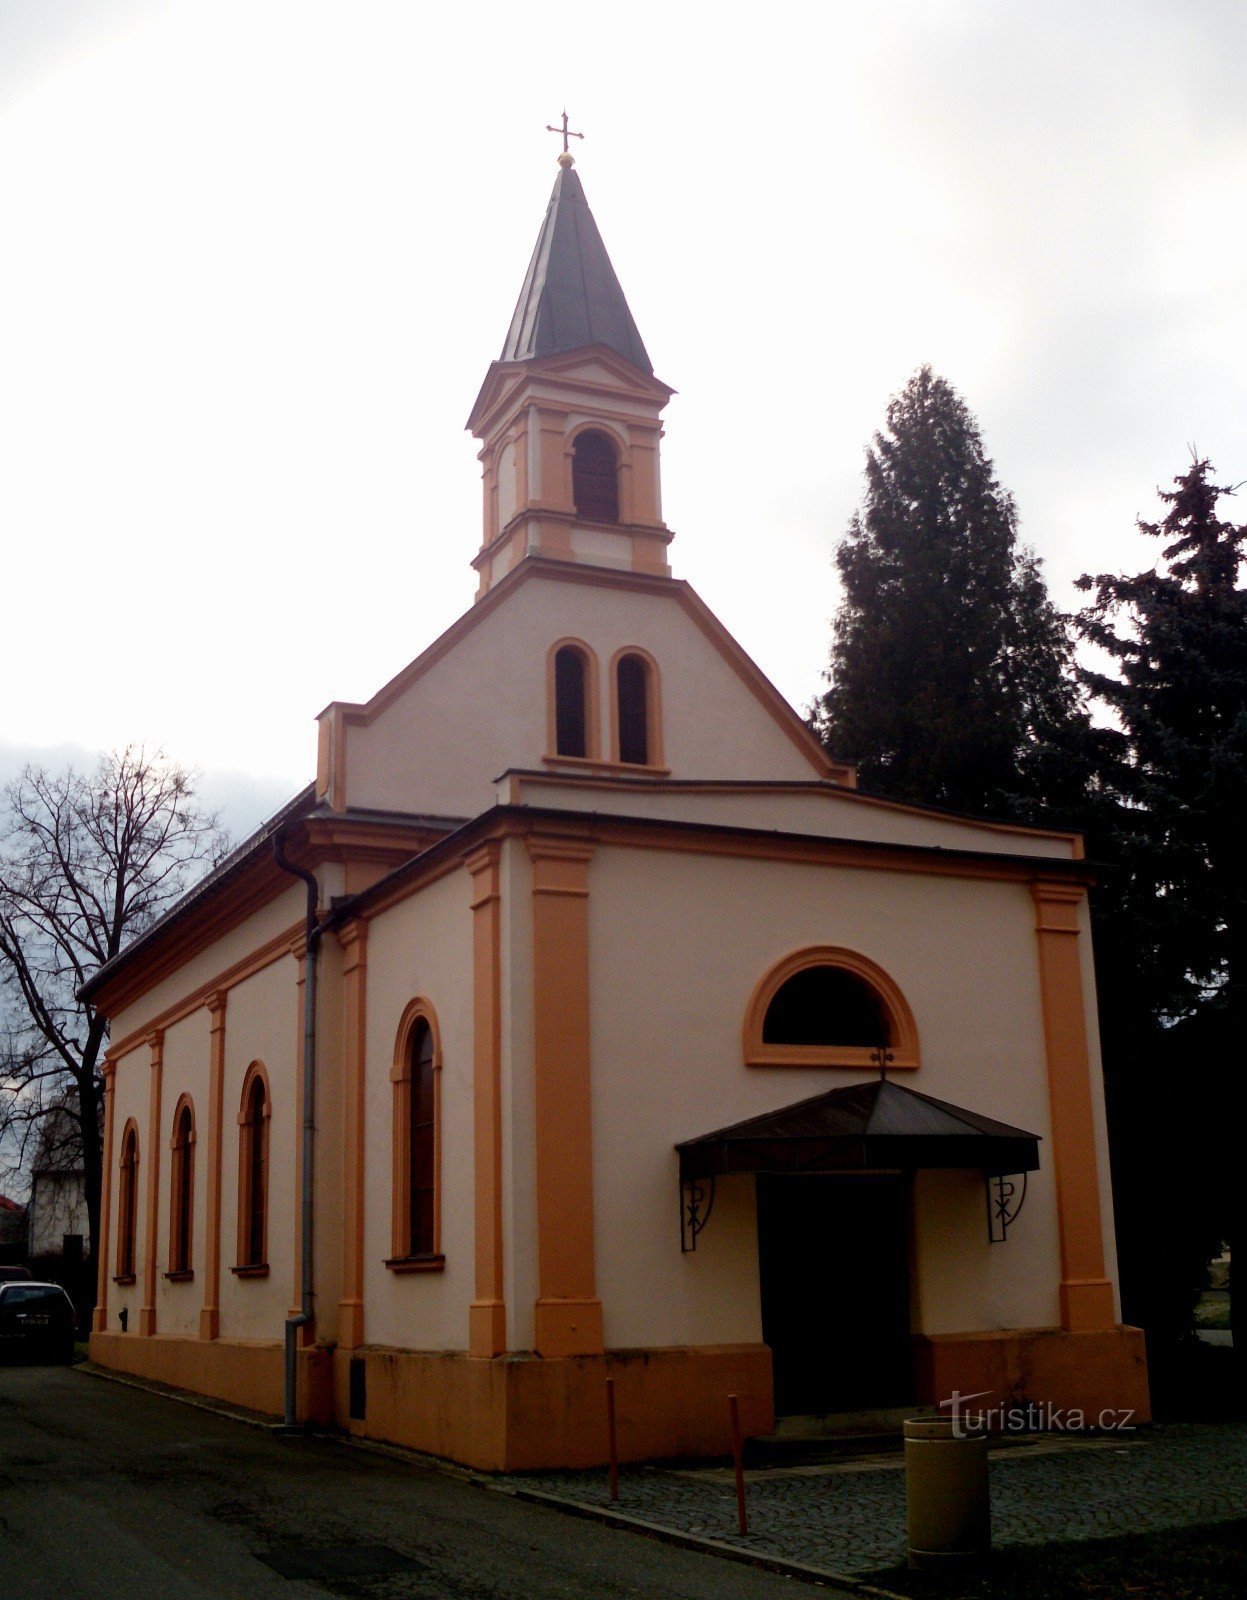 Отроковице - Квитковице - церковь св. Энн